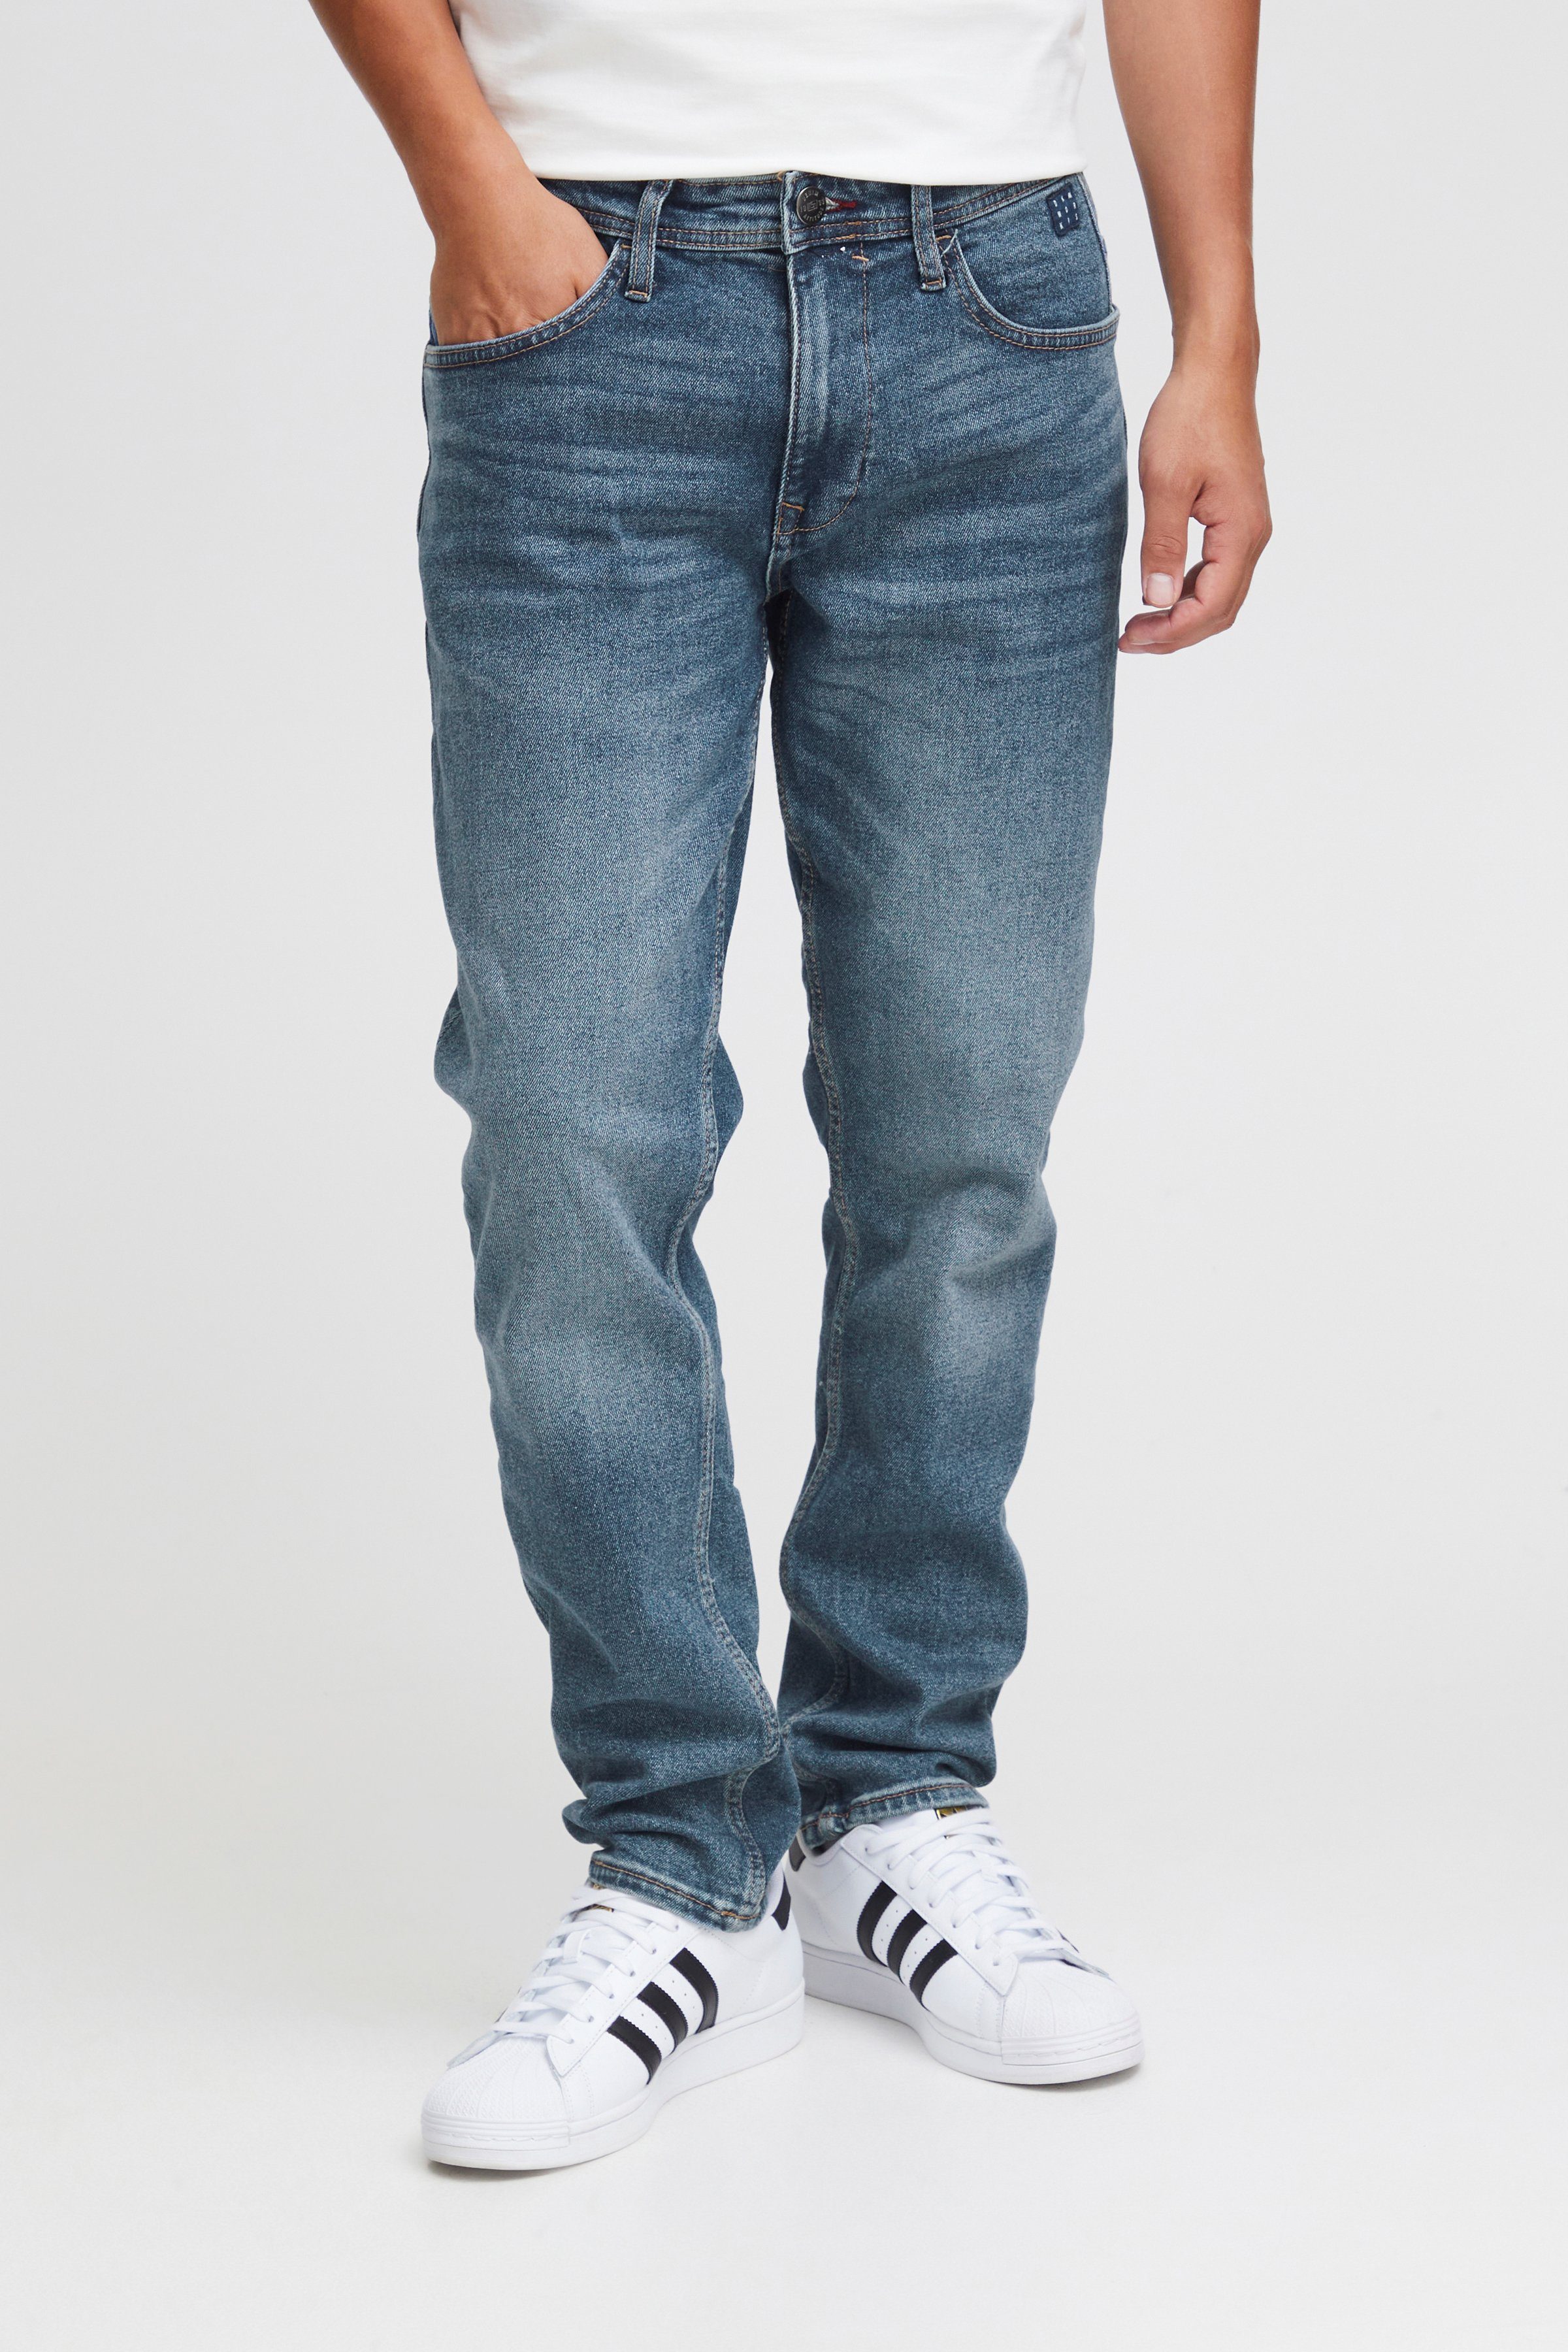 Blend Slim fit jeans TWISTER Regular fit